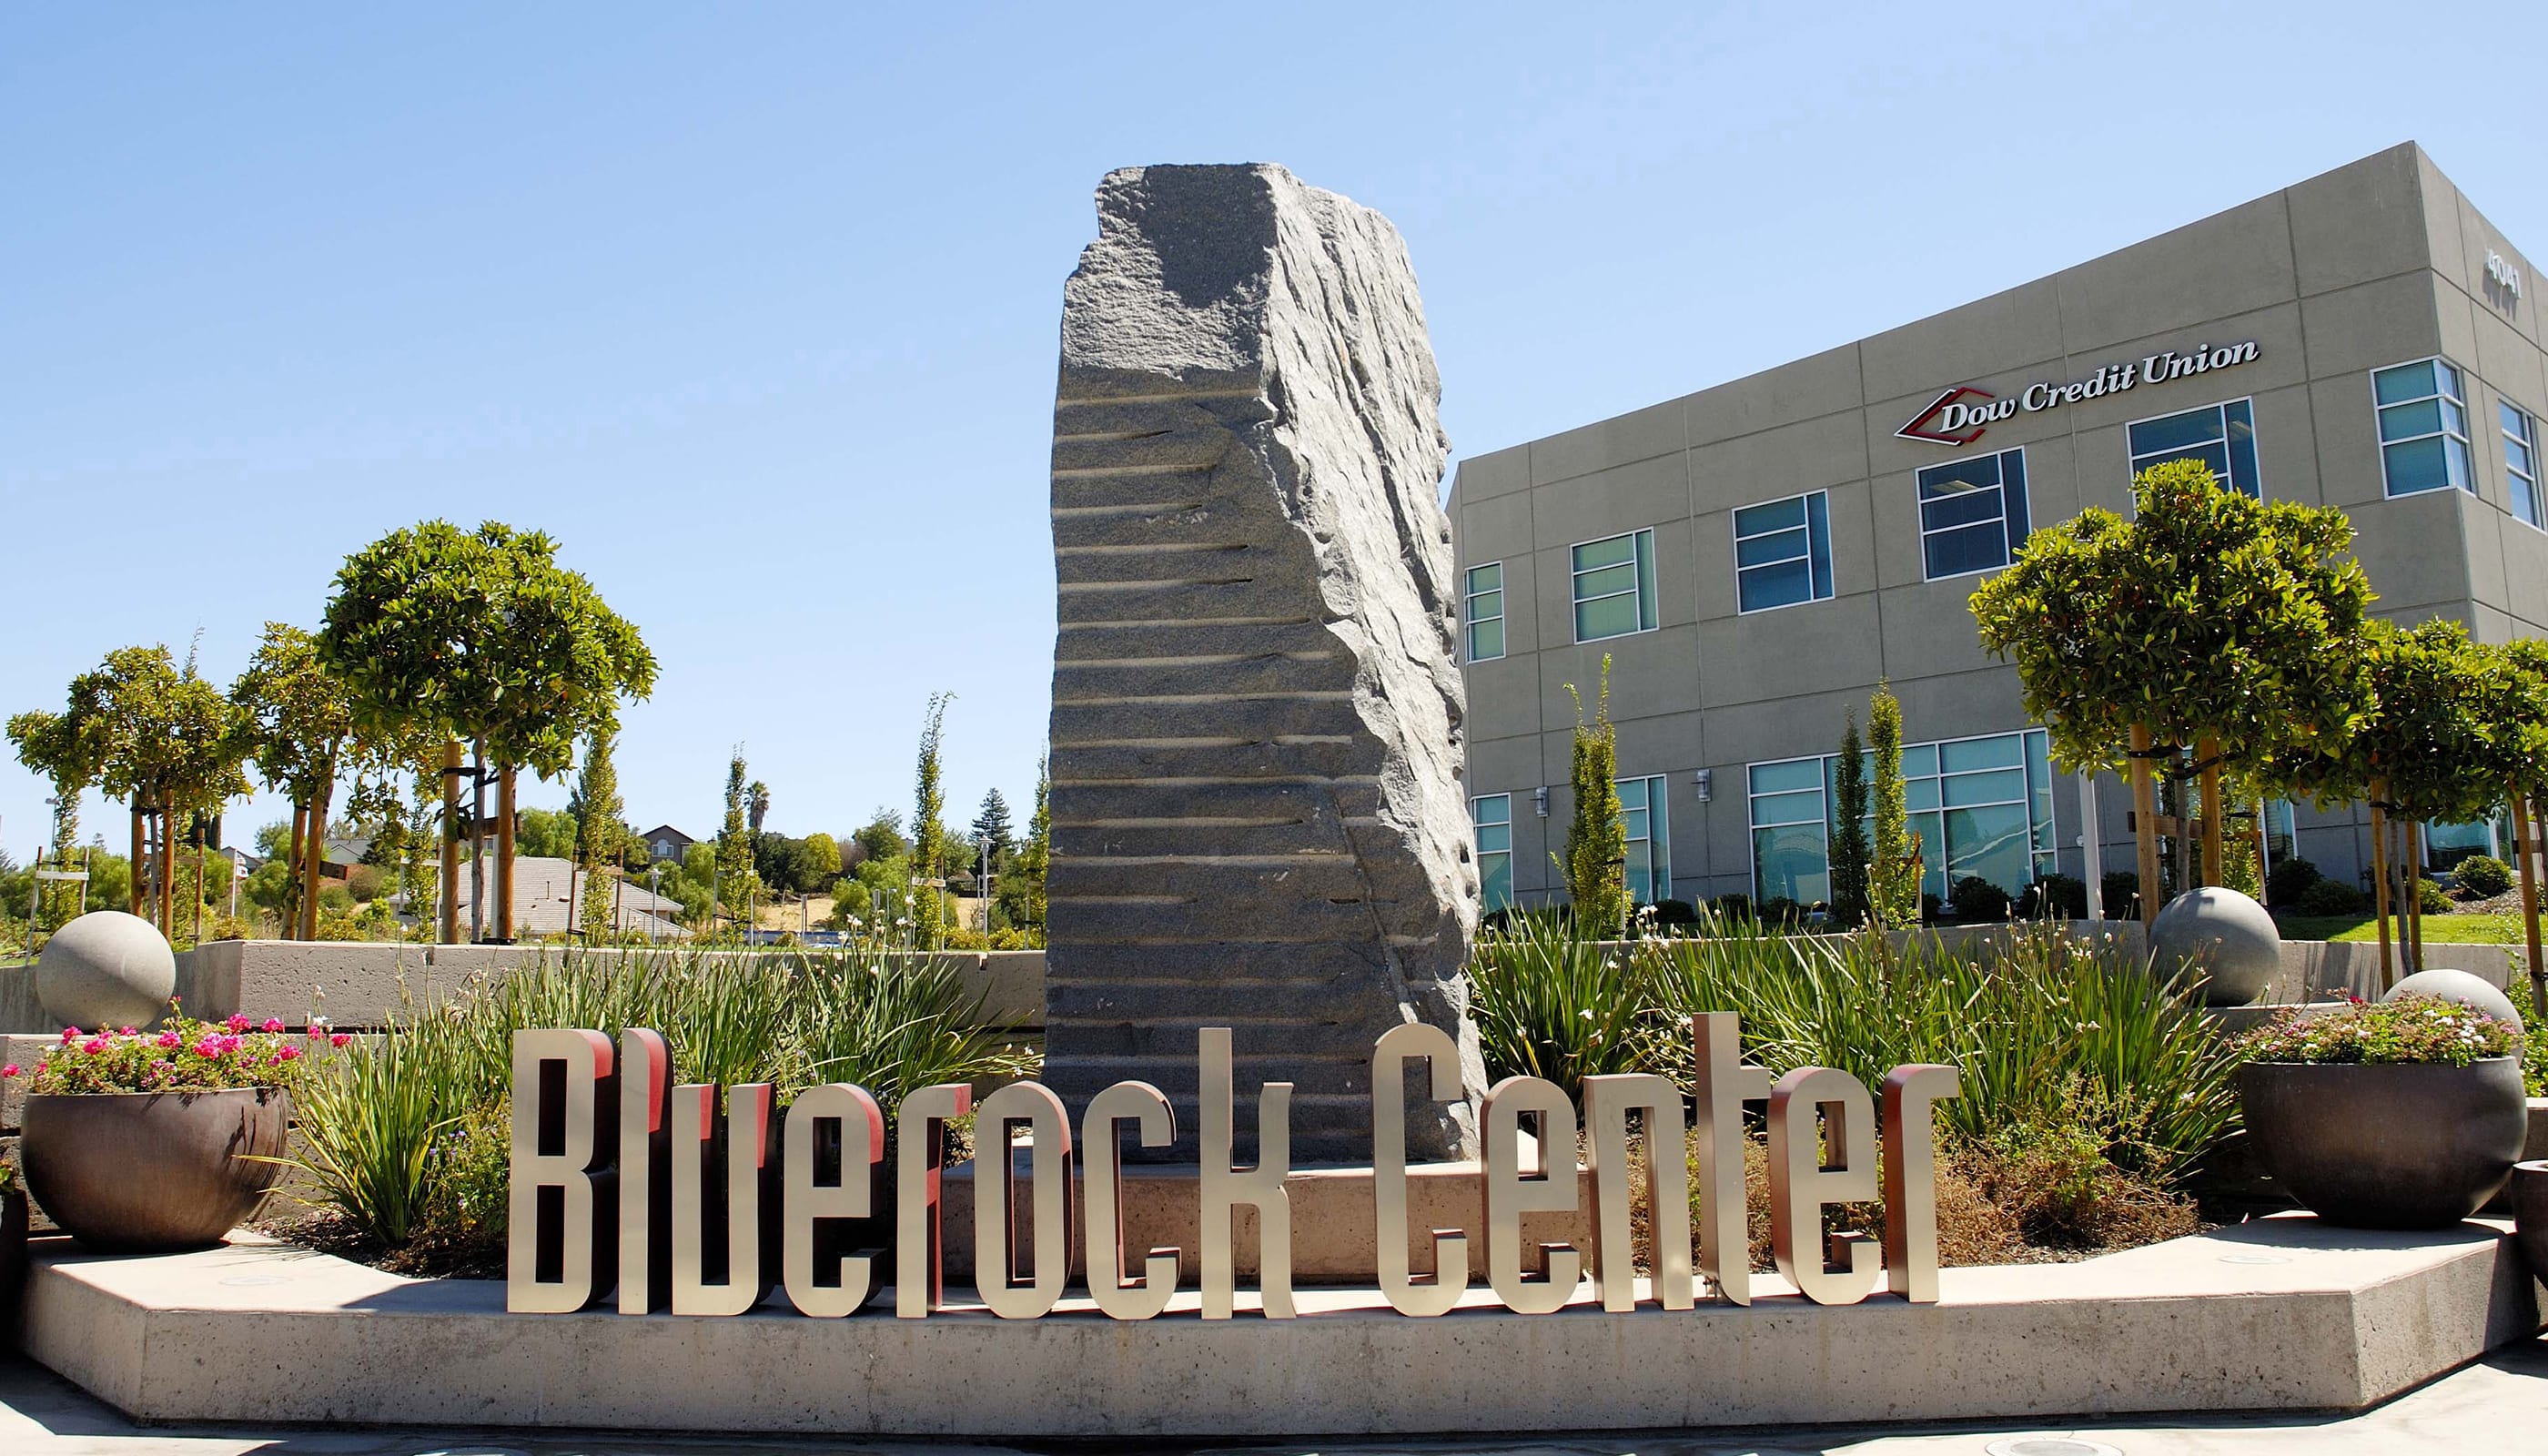 Bluerock Center - Commercial Architecture